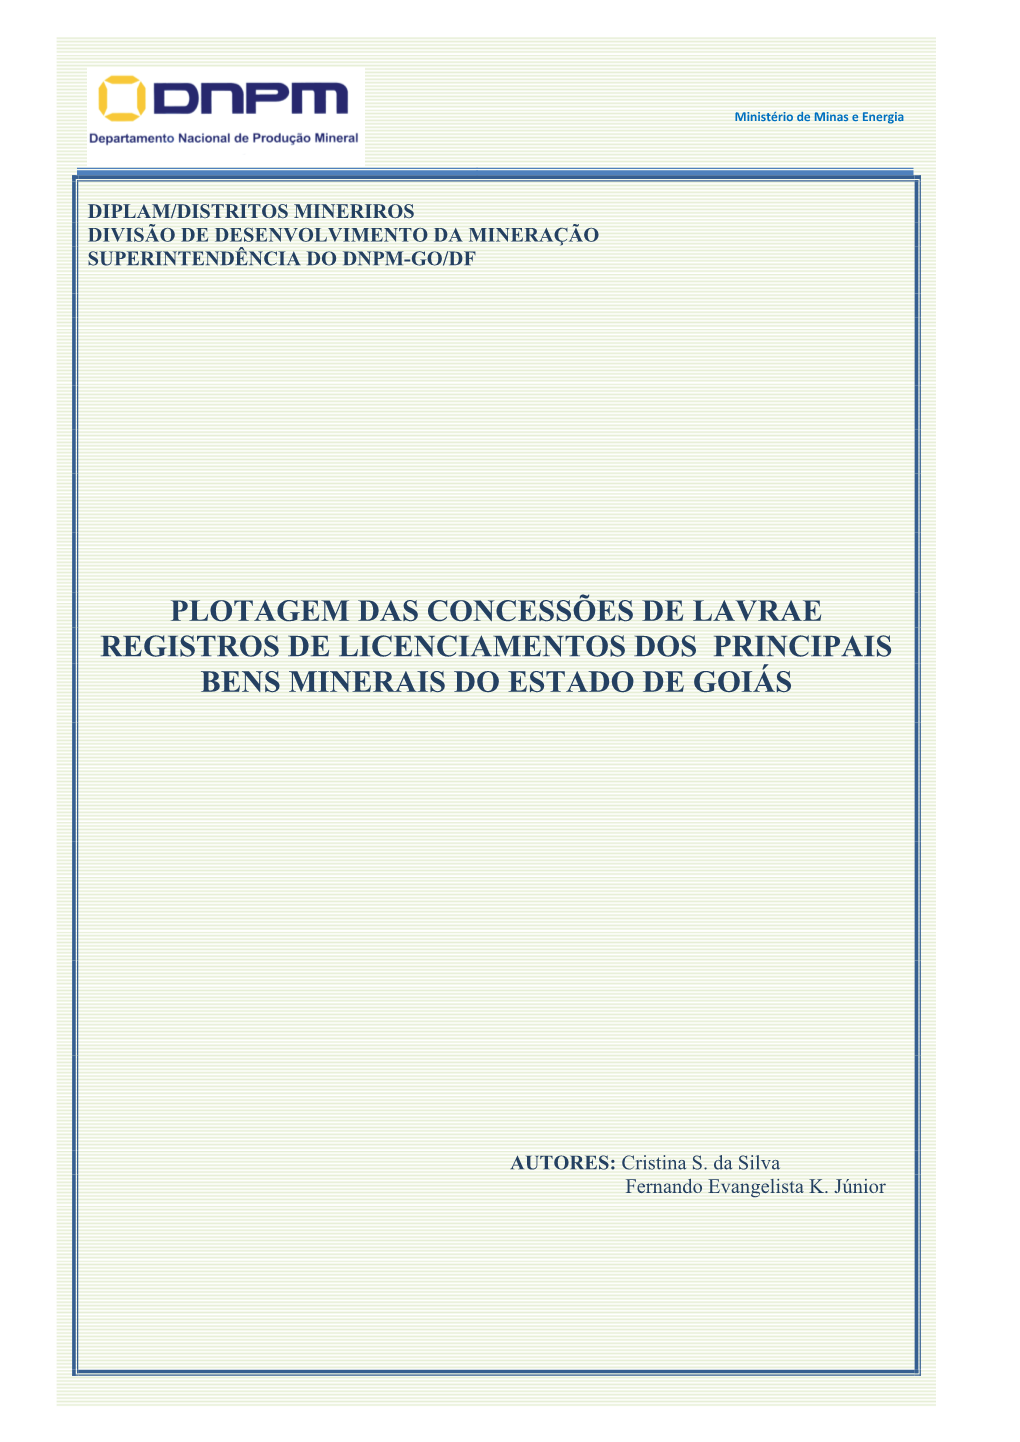 Plotagem Das Concessões De Lavrae Registros De Licenciamentos Dos Principais Bens Minerais Do Estado De Goiás